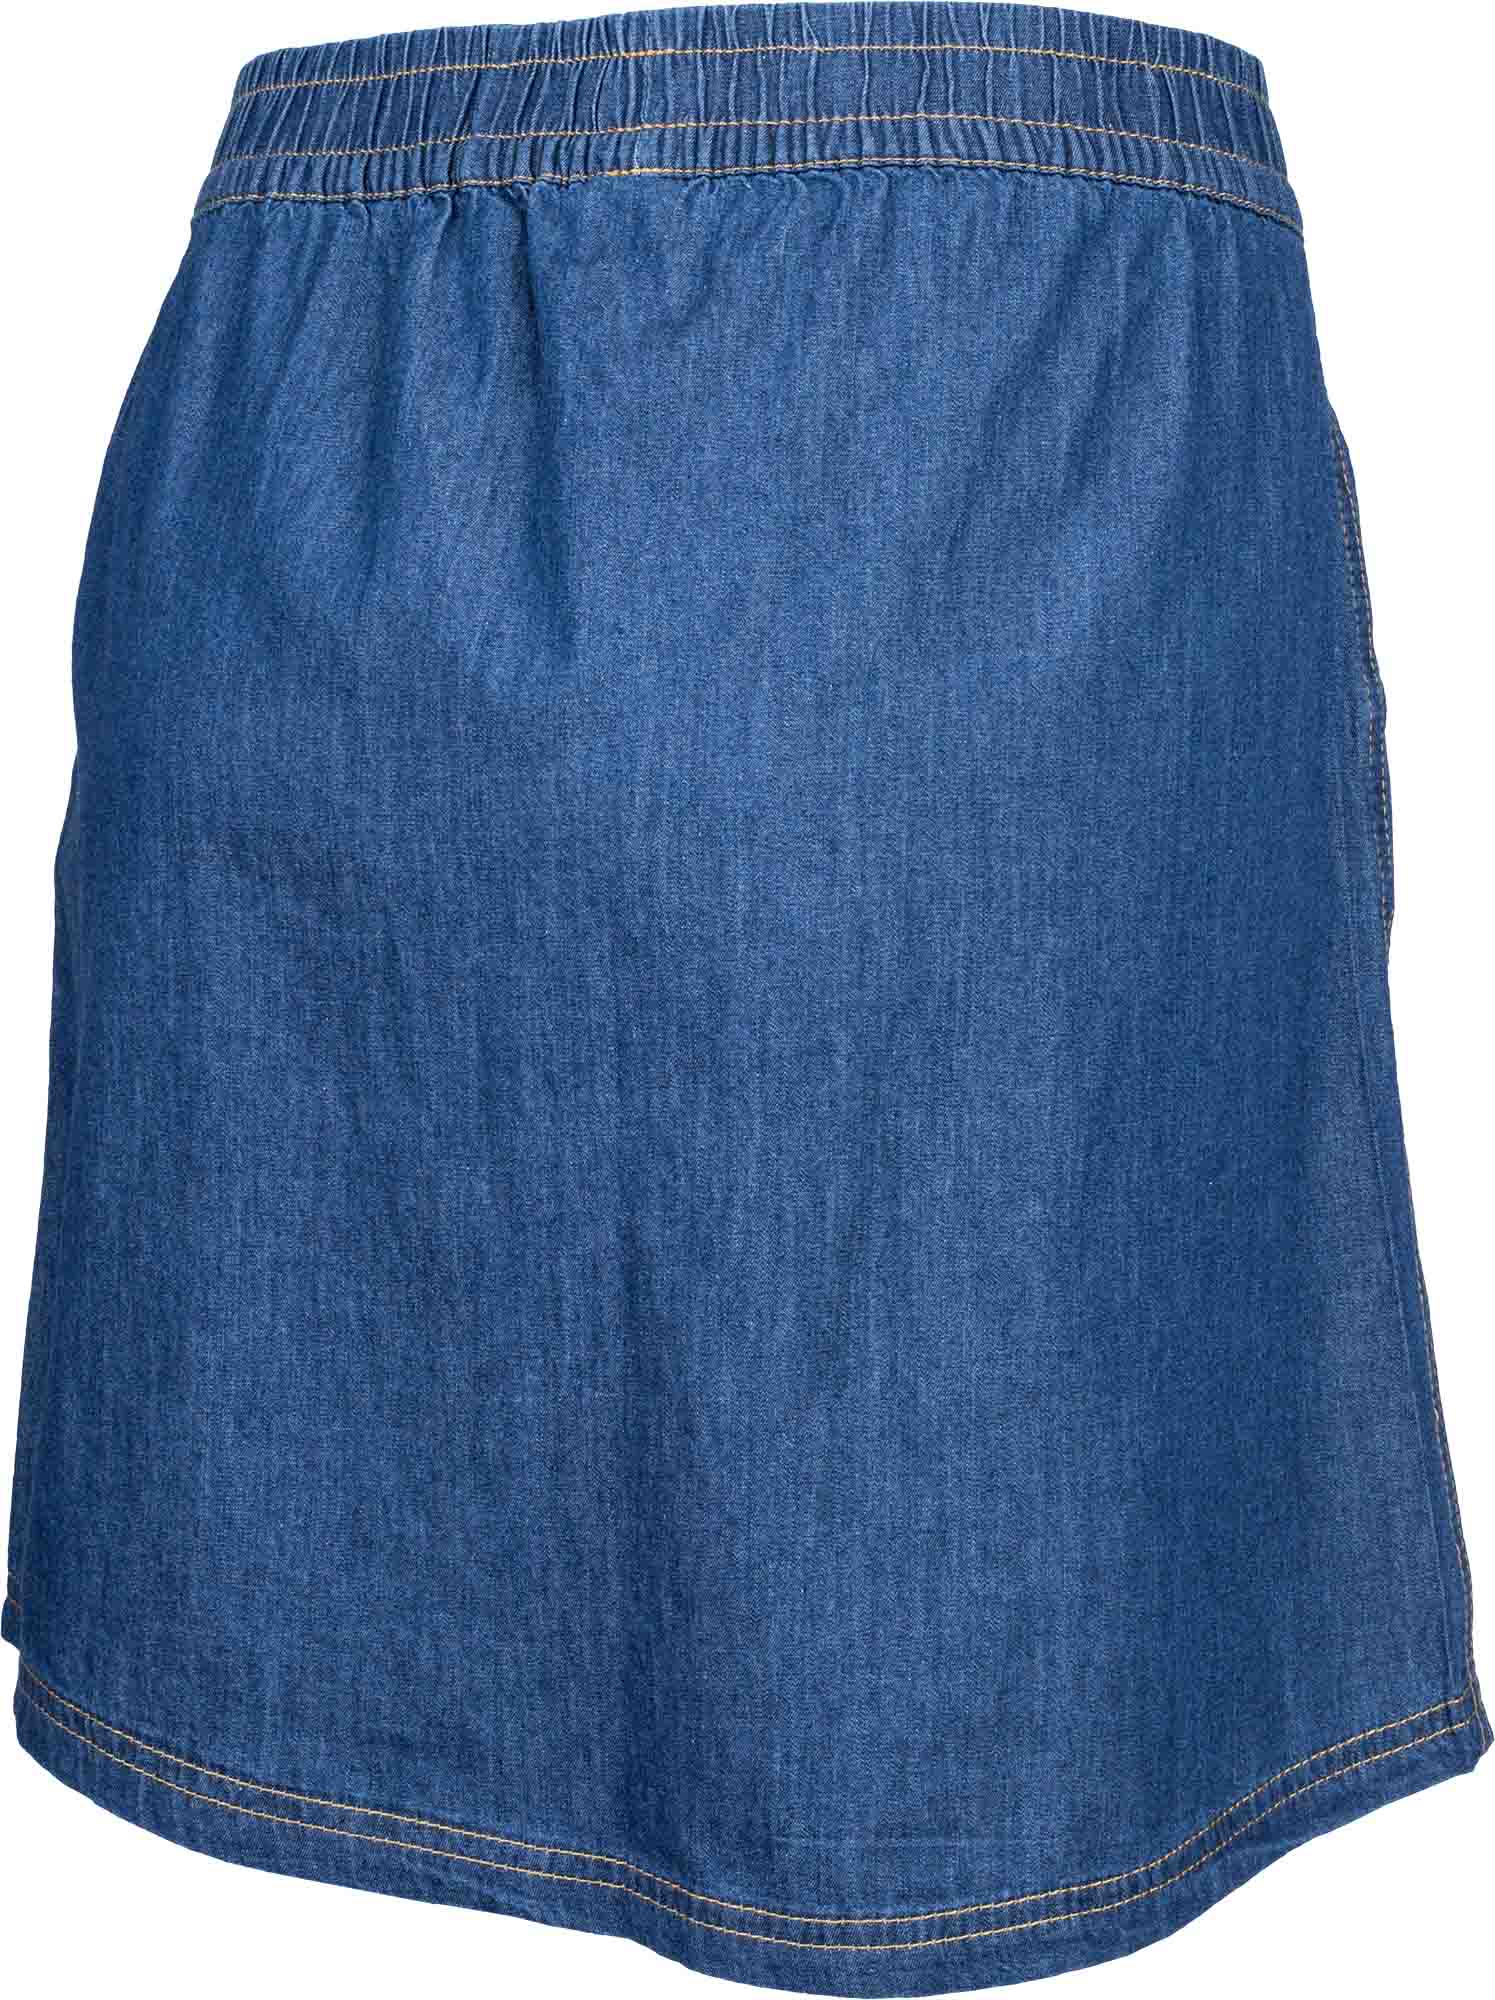 Dámska plátená sukňa s džínsovým vzhľadom